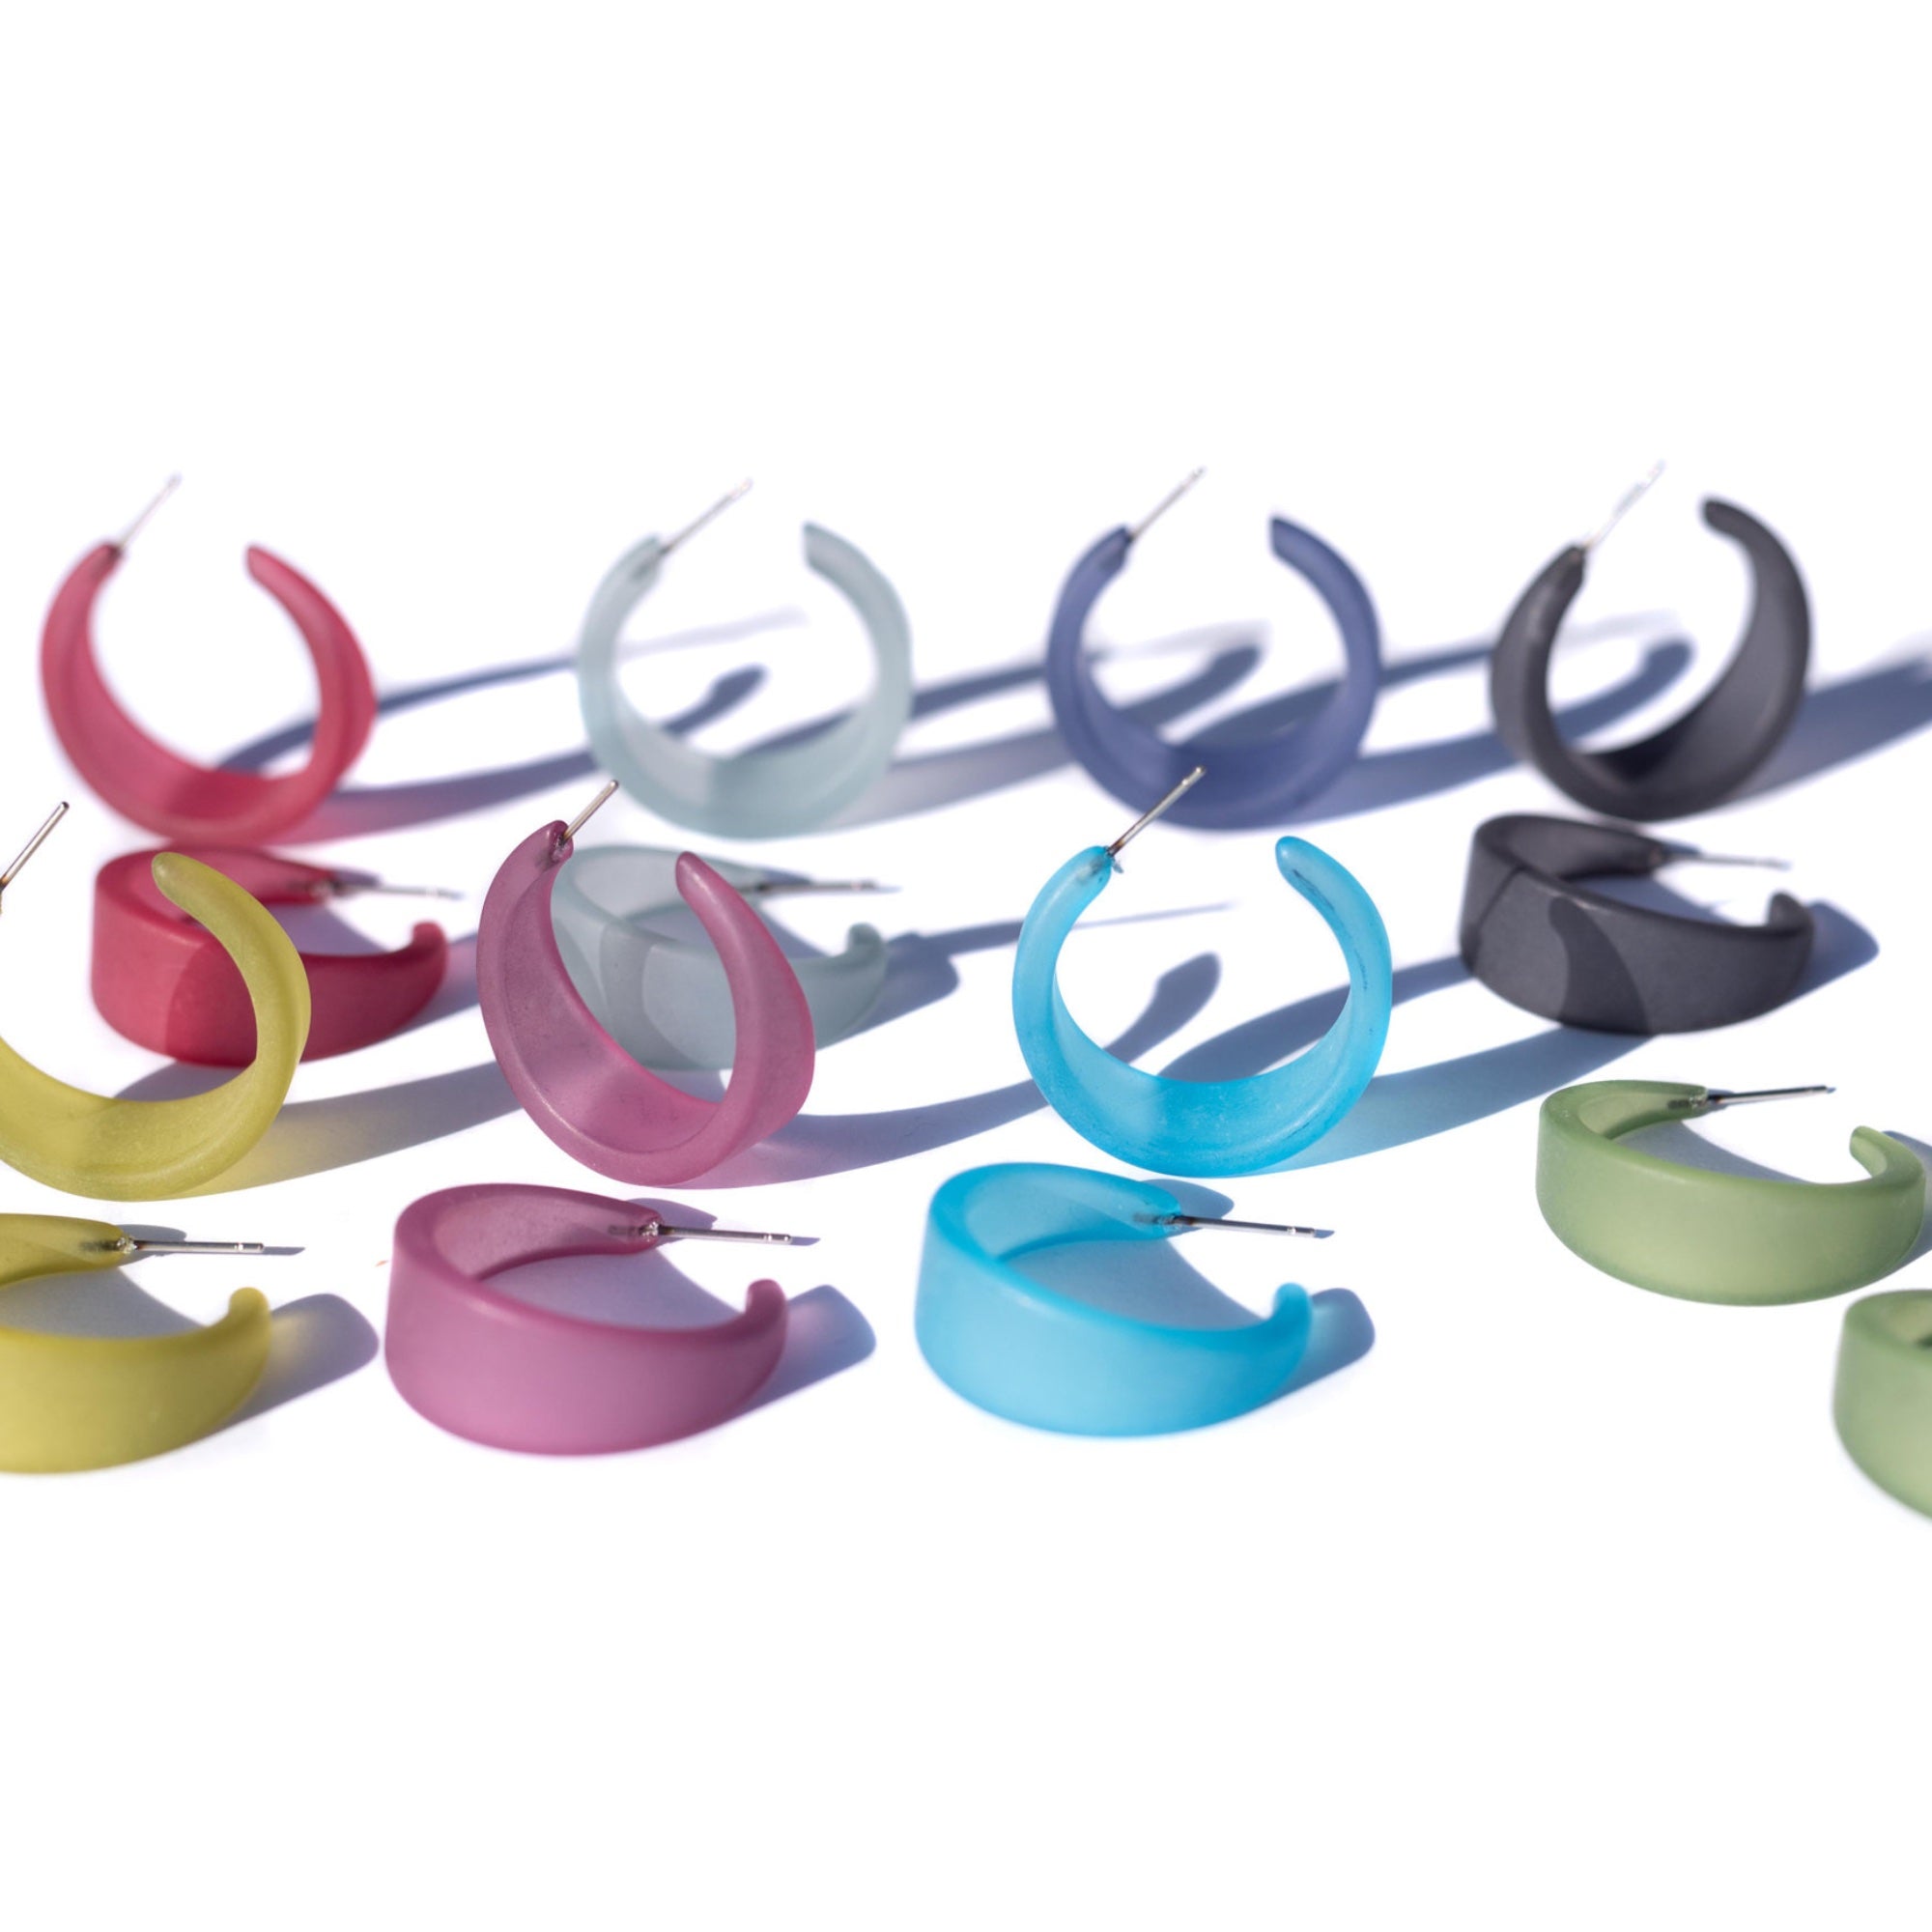 emily hoop earrings in lots of colors